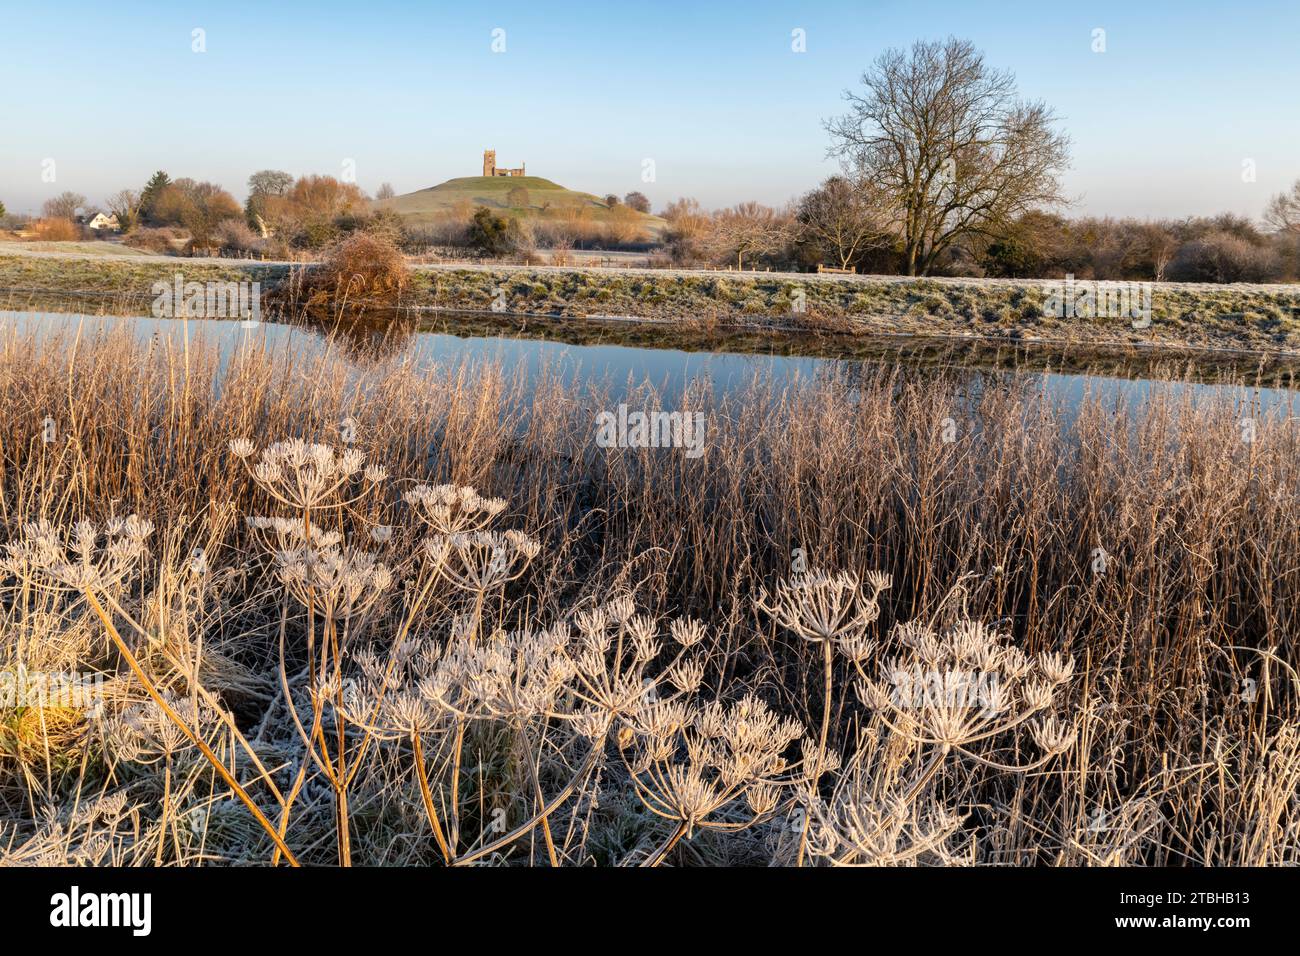 Piante ghiacciate sulle rive del fiume Parrett, con la chiesa di Burrow Mump sullo sfondo, Burrowbridge, Somerset, Inghilterra. Inverno (gennaio) 2023. Foto Stock